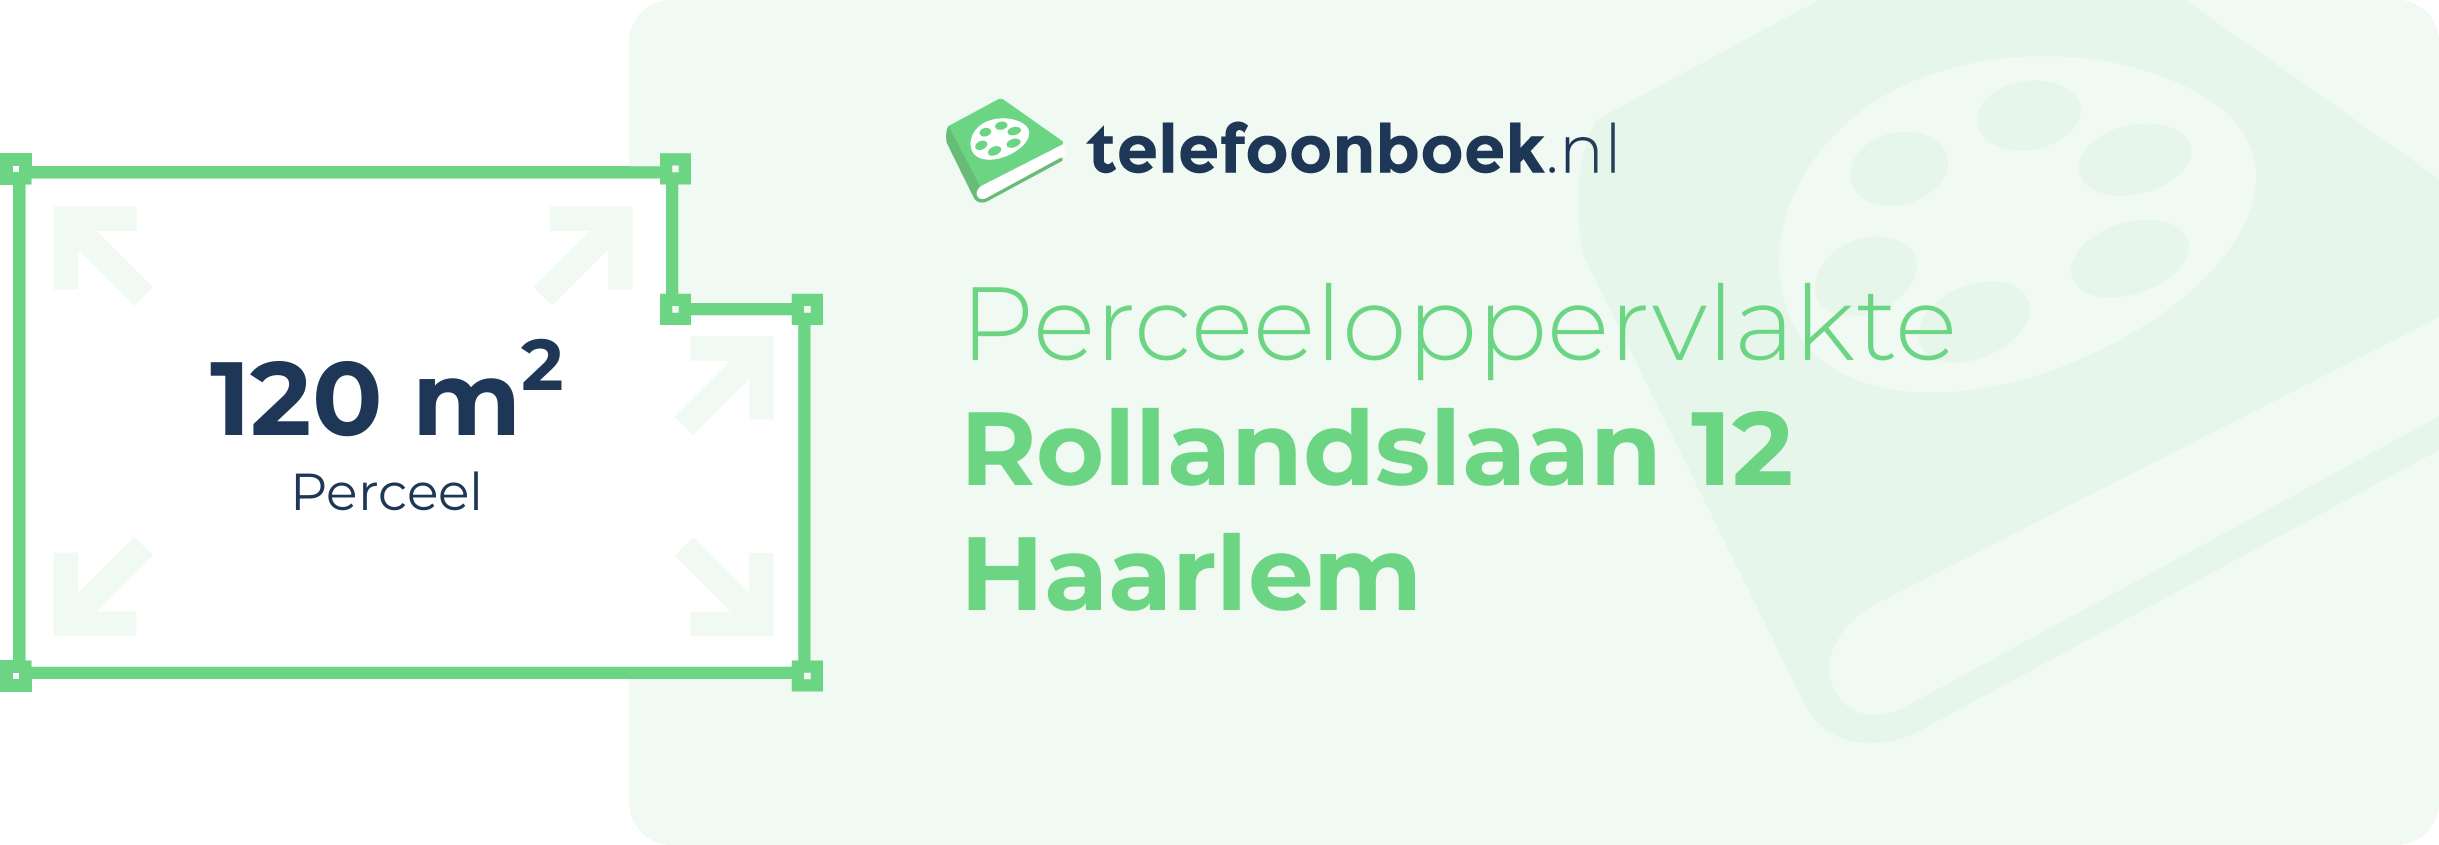 Perceeloppervlakte Rollandslaan 12 Haarlem